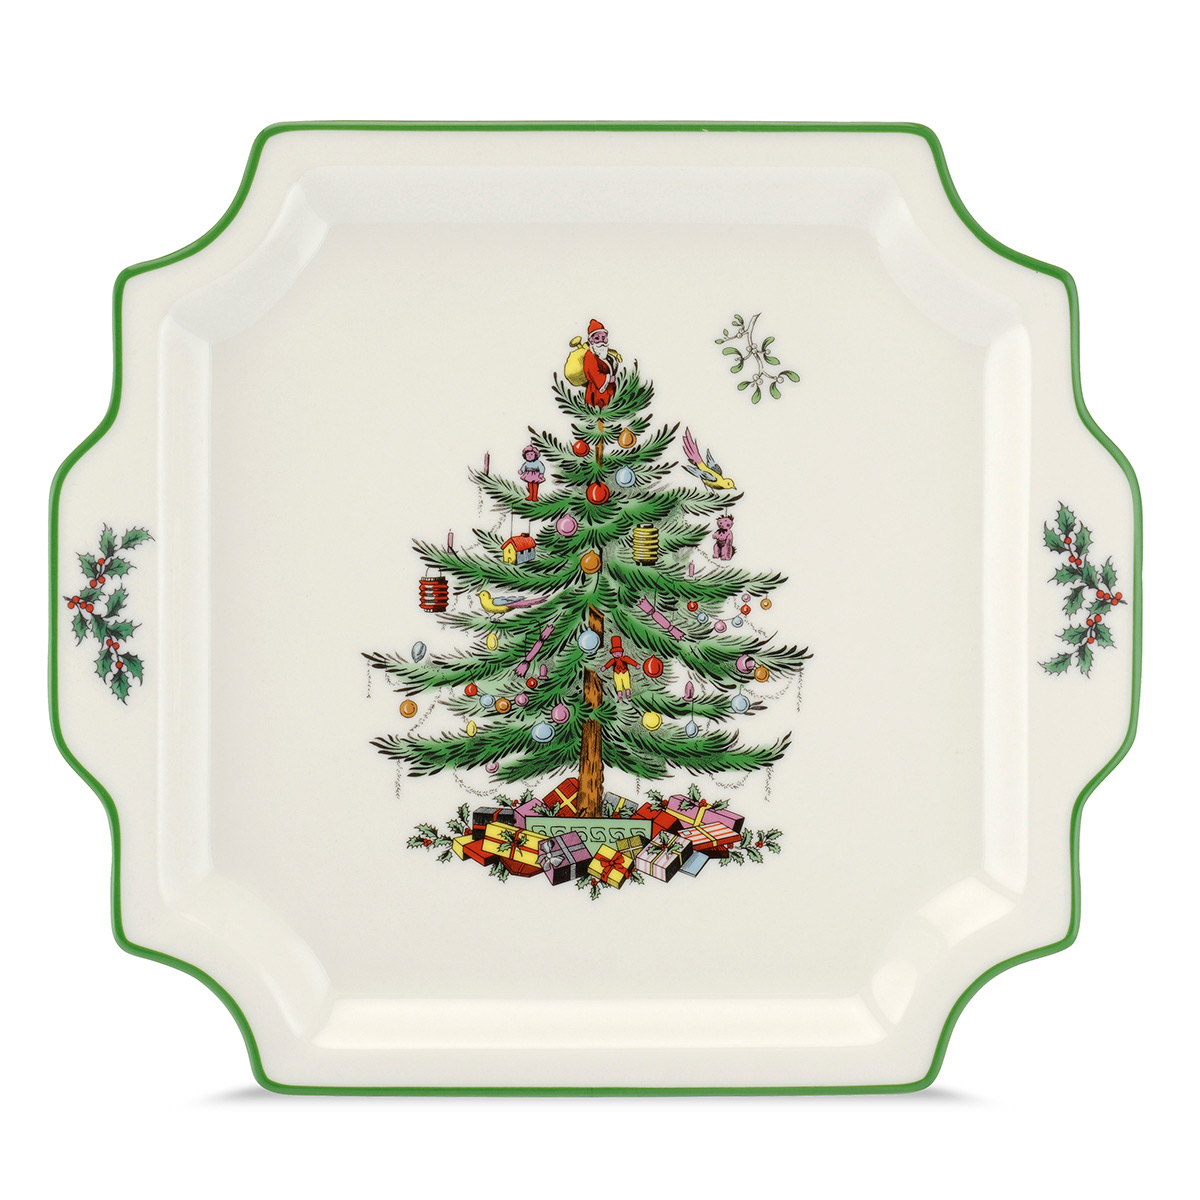 Spode Christmas Tree Serveware Square Handled Platter